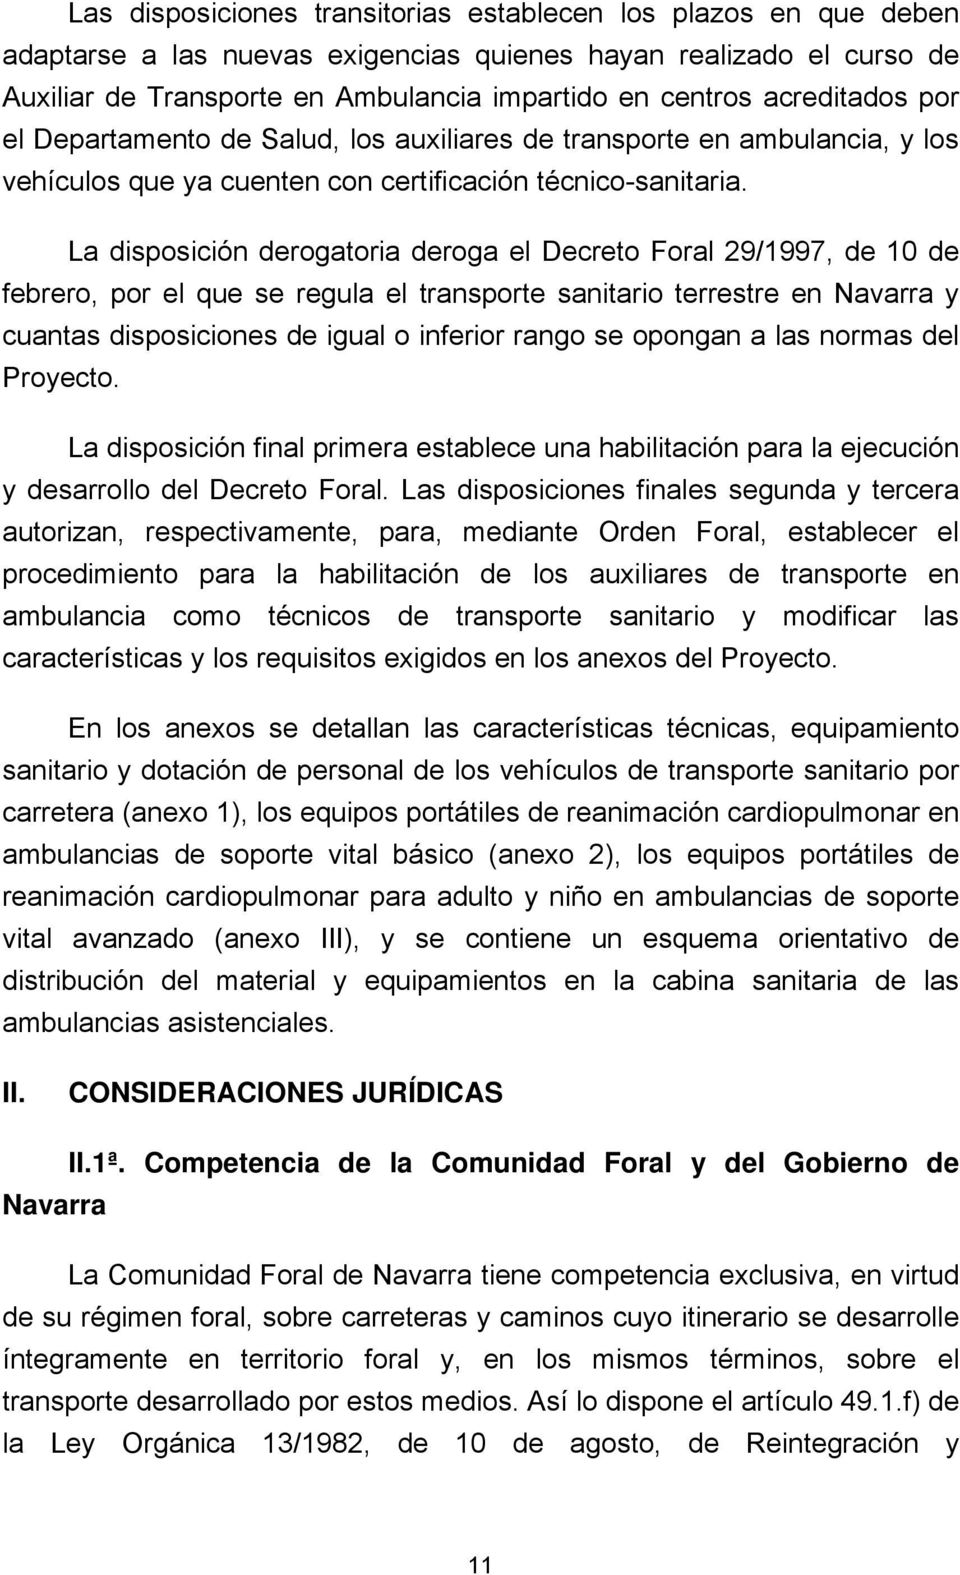 La disposición derogatoria deroga el Decreto Foral 29/1997, de 10 de febrero, por el que se regula el transporte sanitario terrestre en Navarra y cuantas disposiciones de igual o inferior rango se